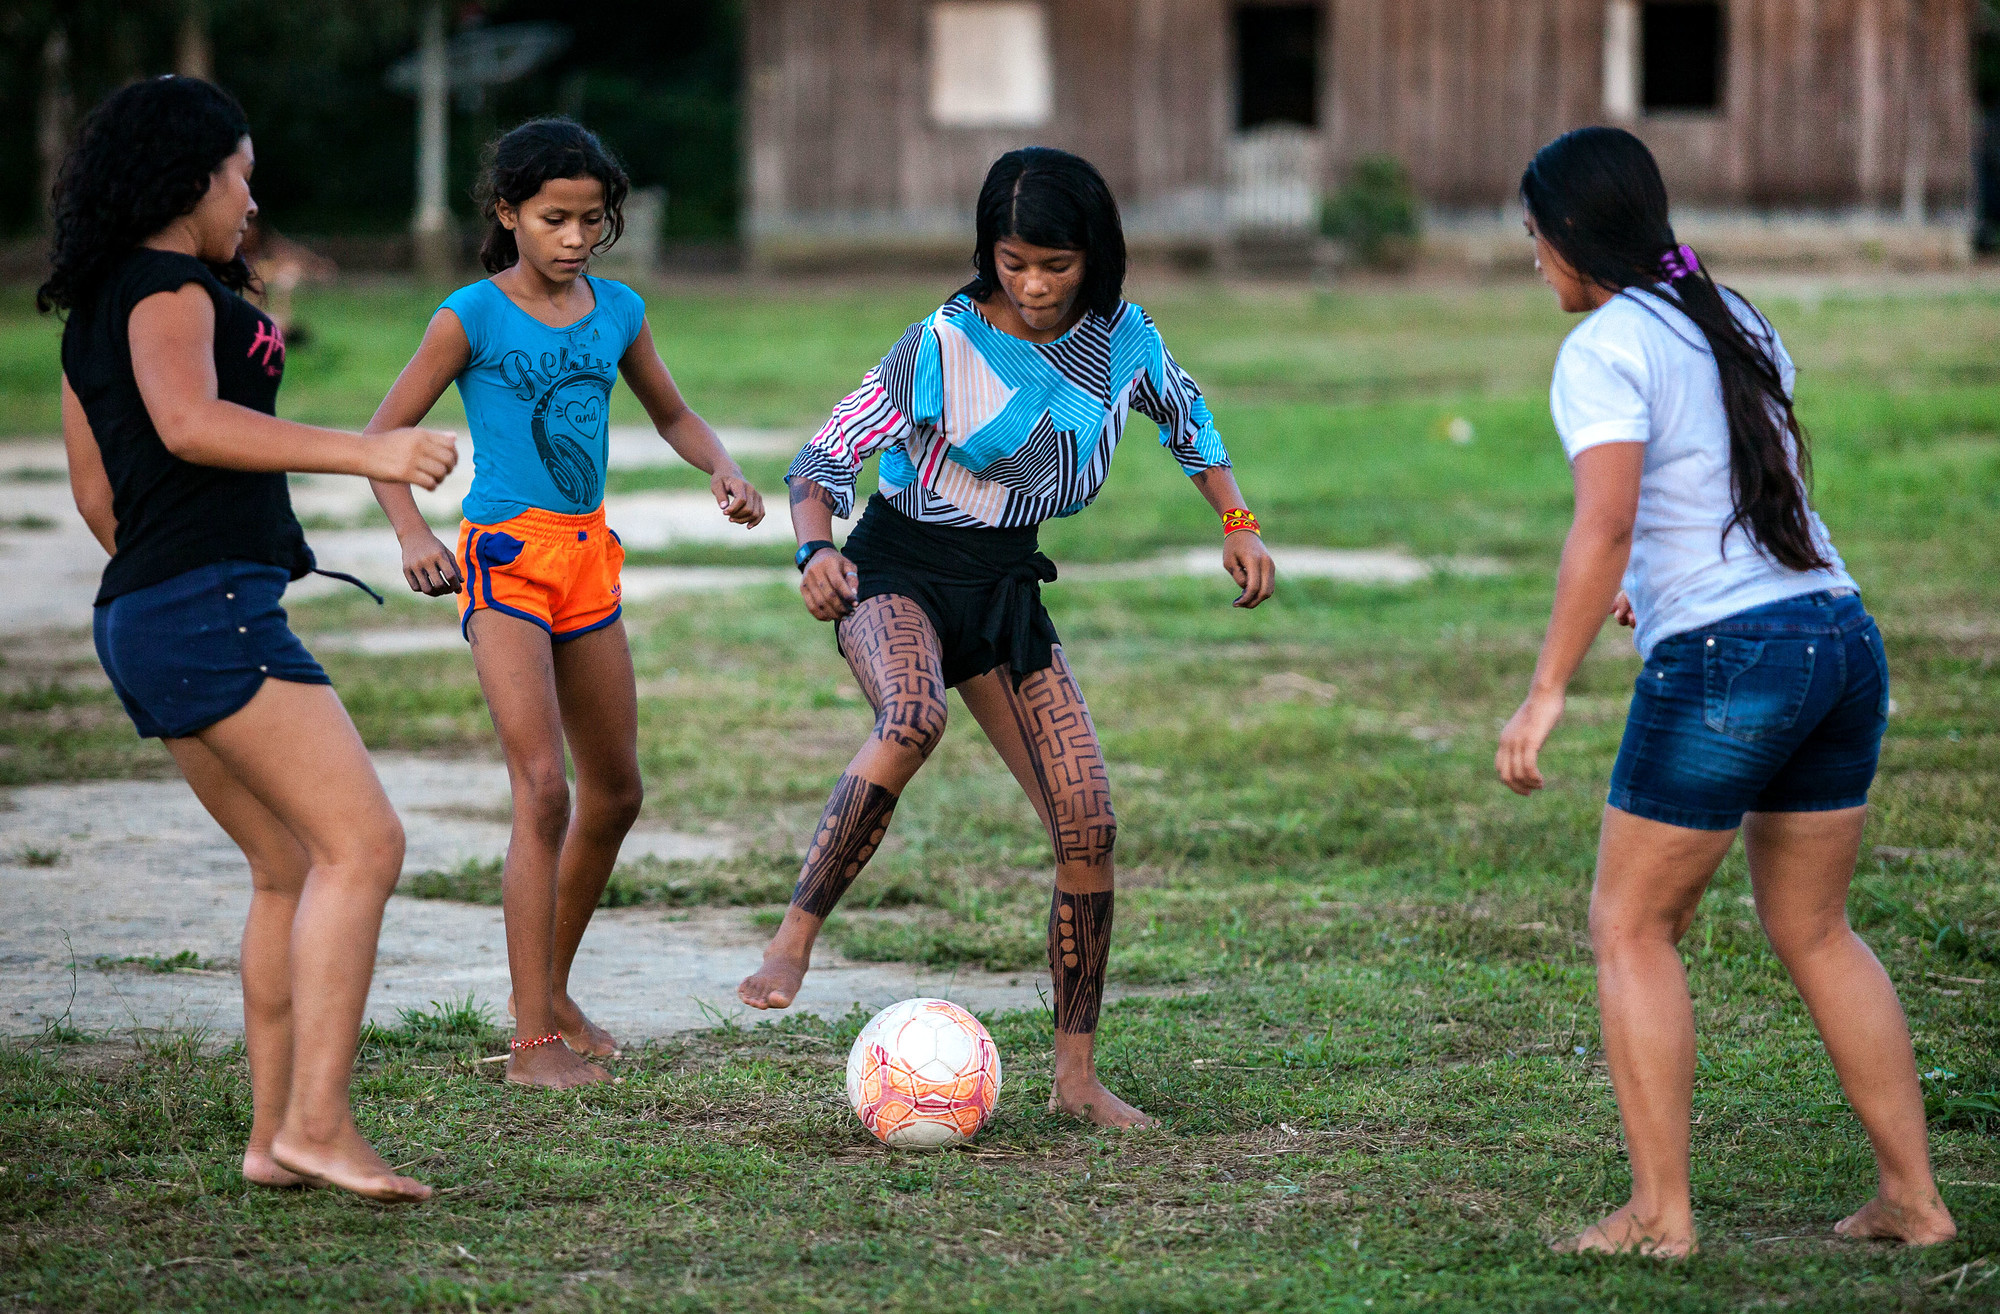 Mulheres da aldeia Tukayá jogam futebol na tarde de um dos dias da V Semana do Extrativismo. @Lilo Clareto / ISA